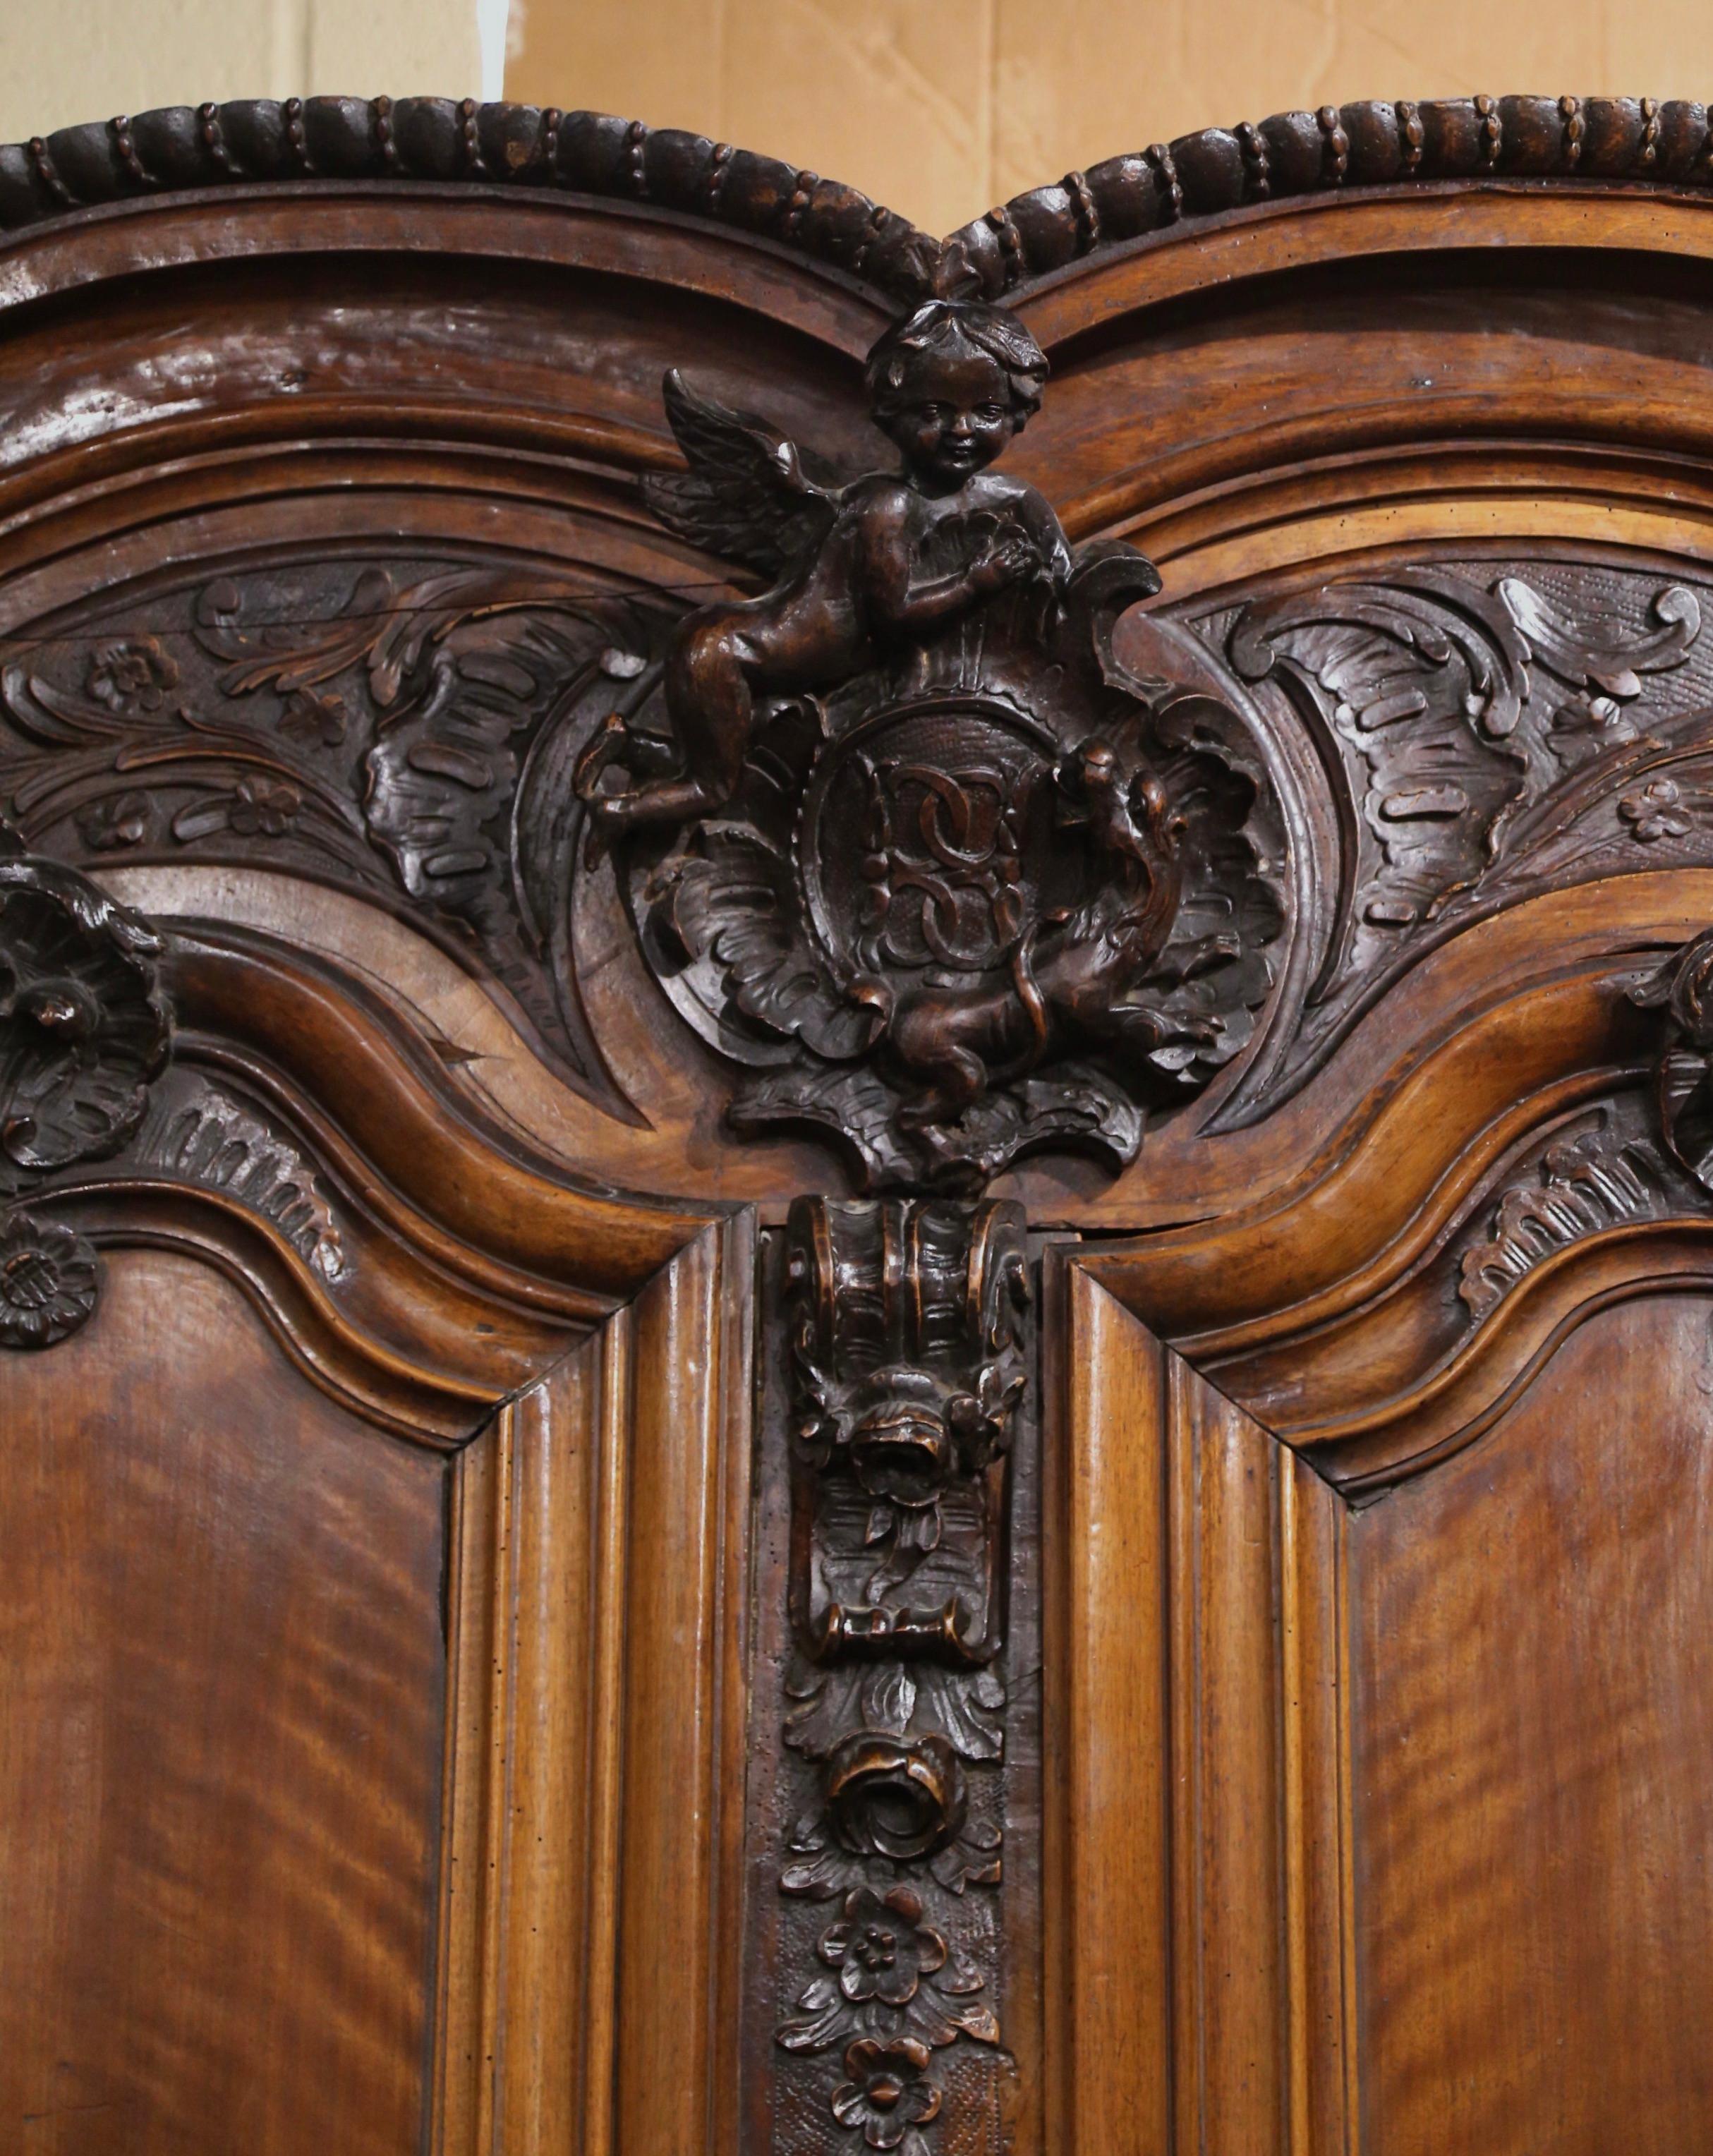 Cette importante armoire lyonnaise a été sculptée à Lyon, en France, vers 1760. Ce grand meuble ancien en bois fruitier repose sur des pieds en chignon au-dessus d'une base droite ; il présente un élégant double chapeau au fronton avec un exquis